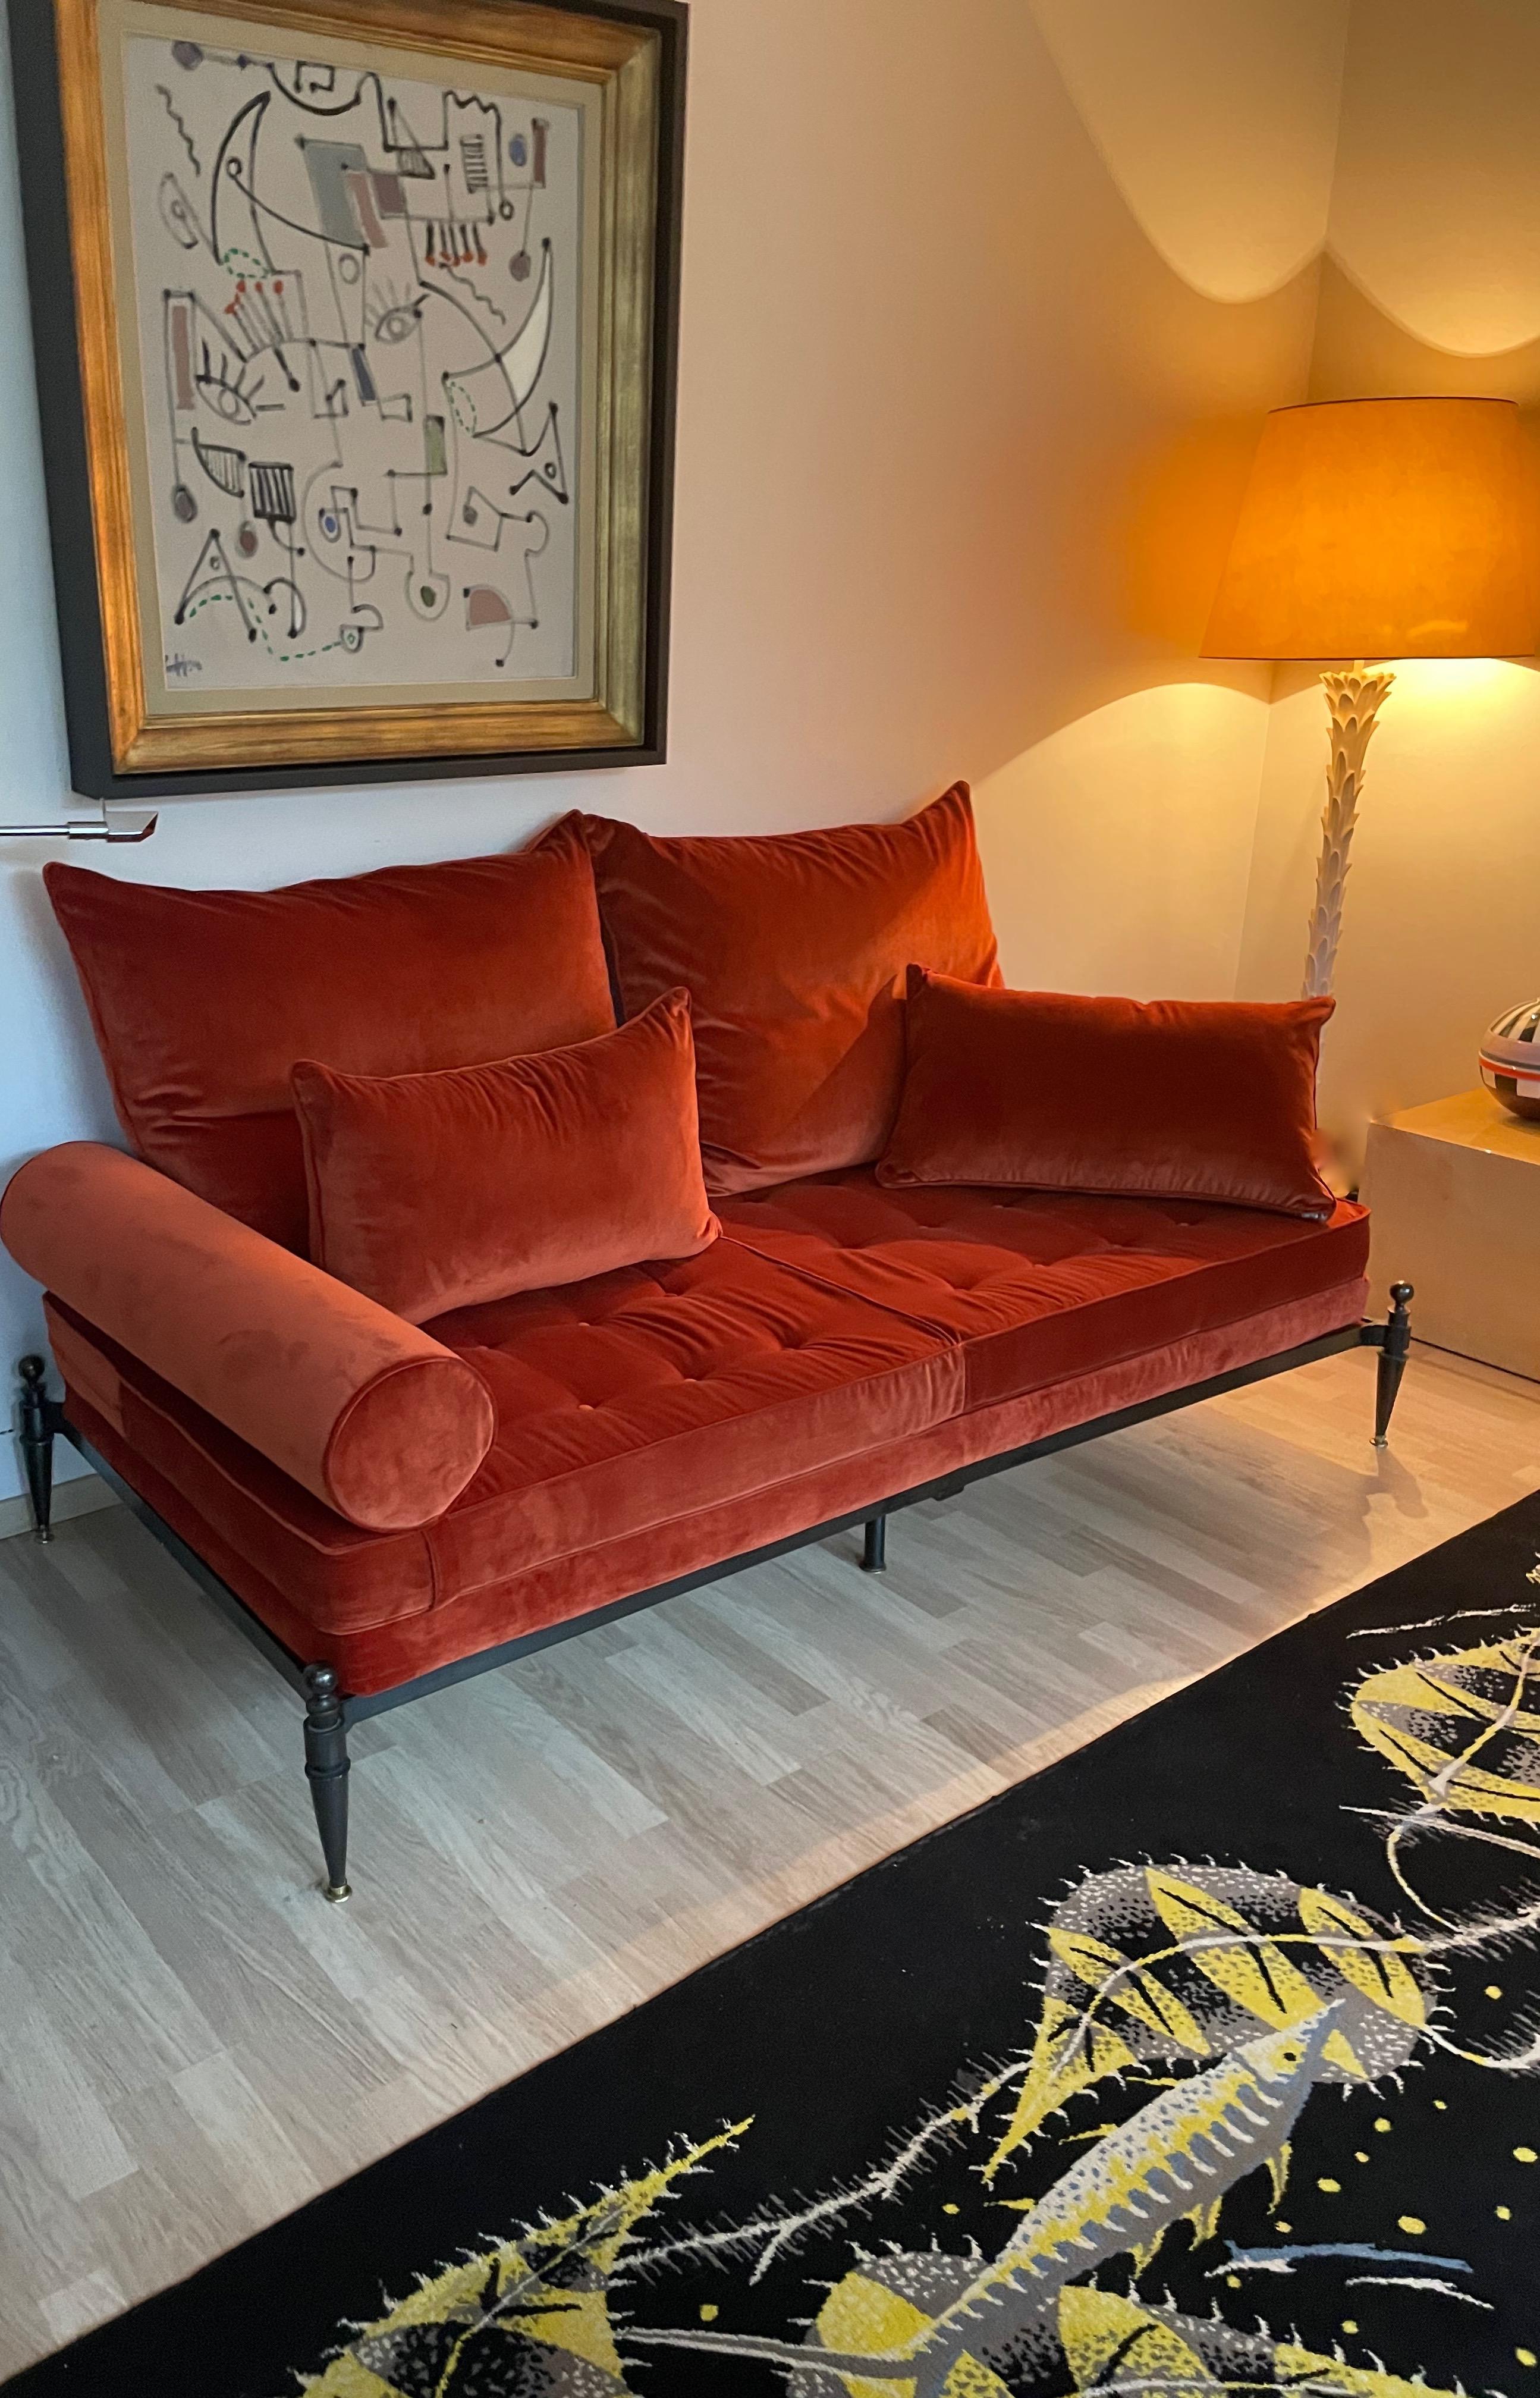 Neoklassische Bronze Sofa vor kurzem reupholstert in Rost Farbe Samt ( City Samt Sammlung CarluccI - JAB ), feat Kissen, zwei  Nackenrollen verfügbar.
Entworfen von Jaques Quinet-France.
Circa 1948.